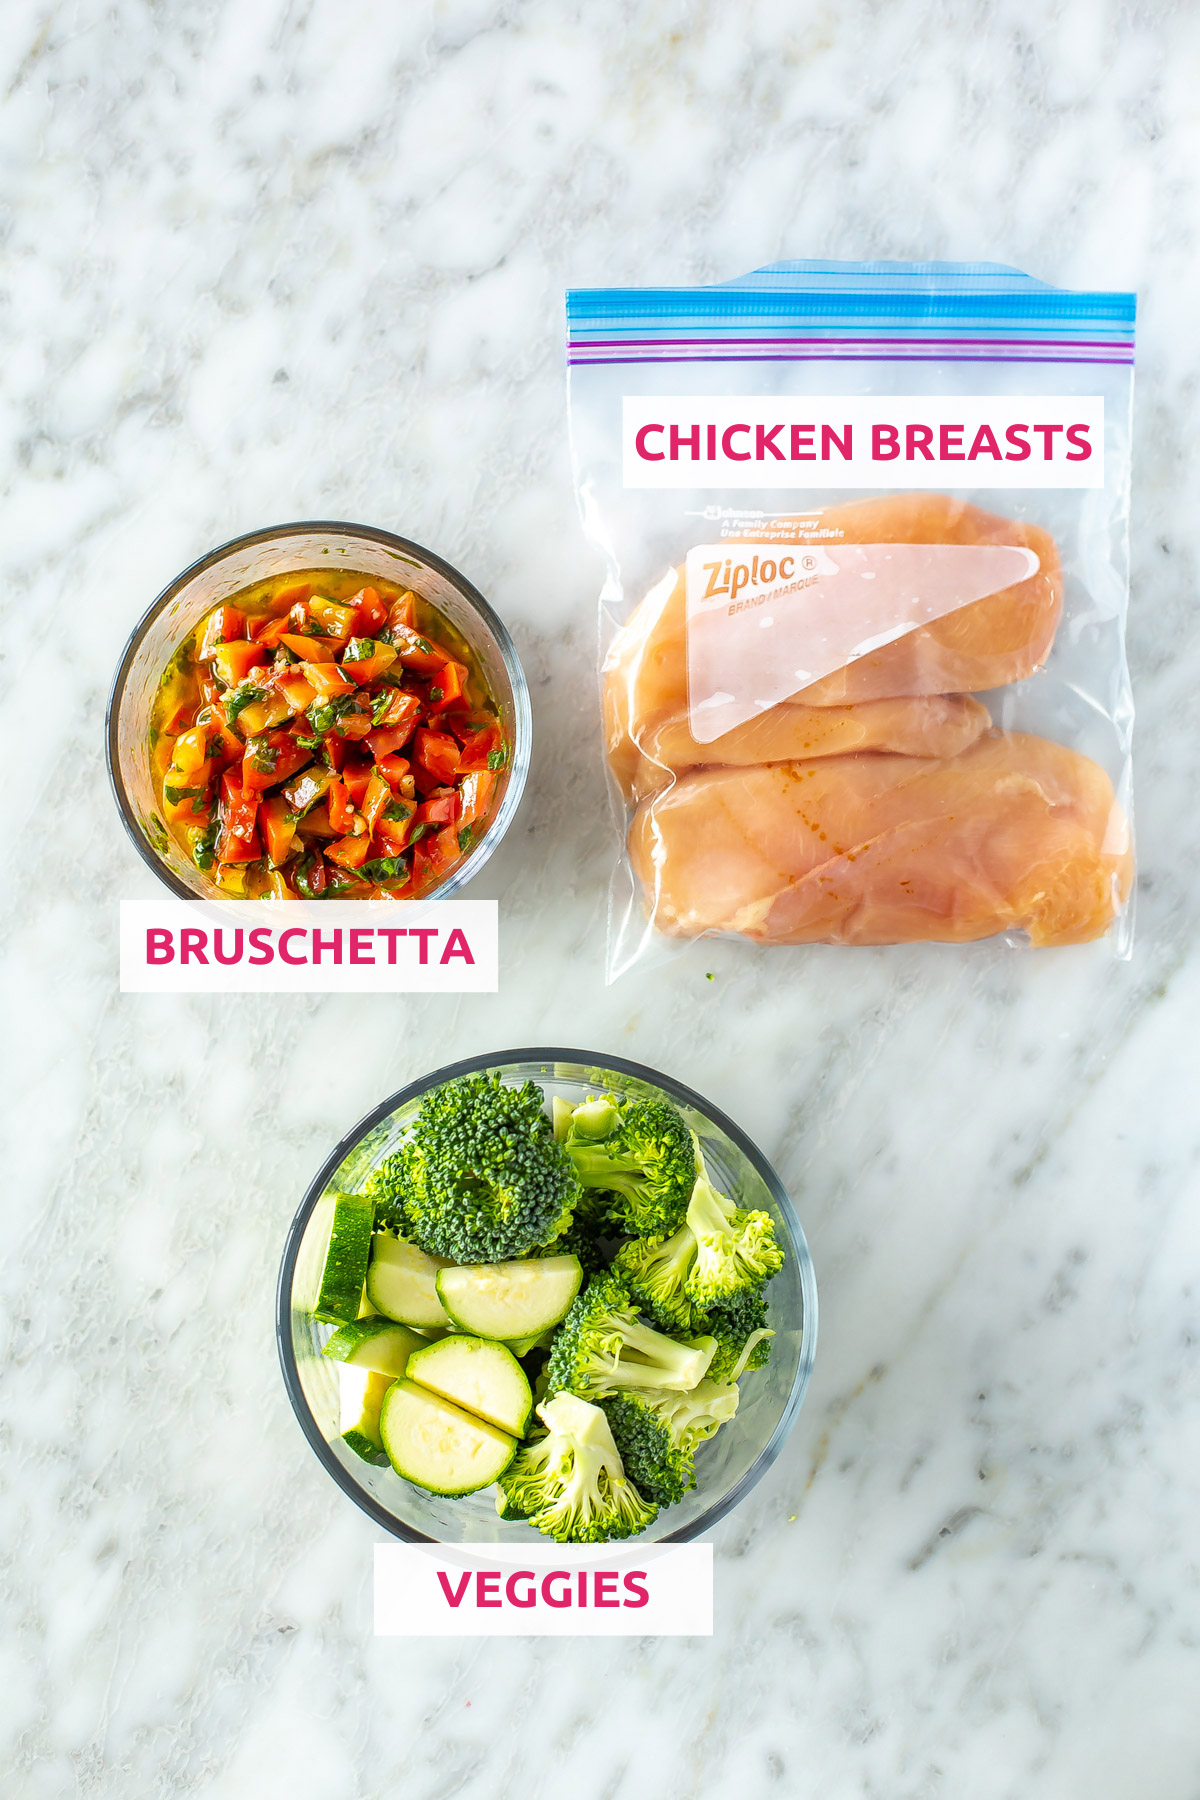 Ingredients for sheet pan bruschetta chicken: chicken breasts, bruschetta, and veggies.